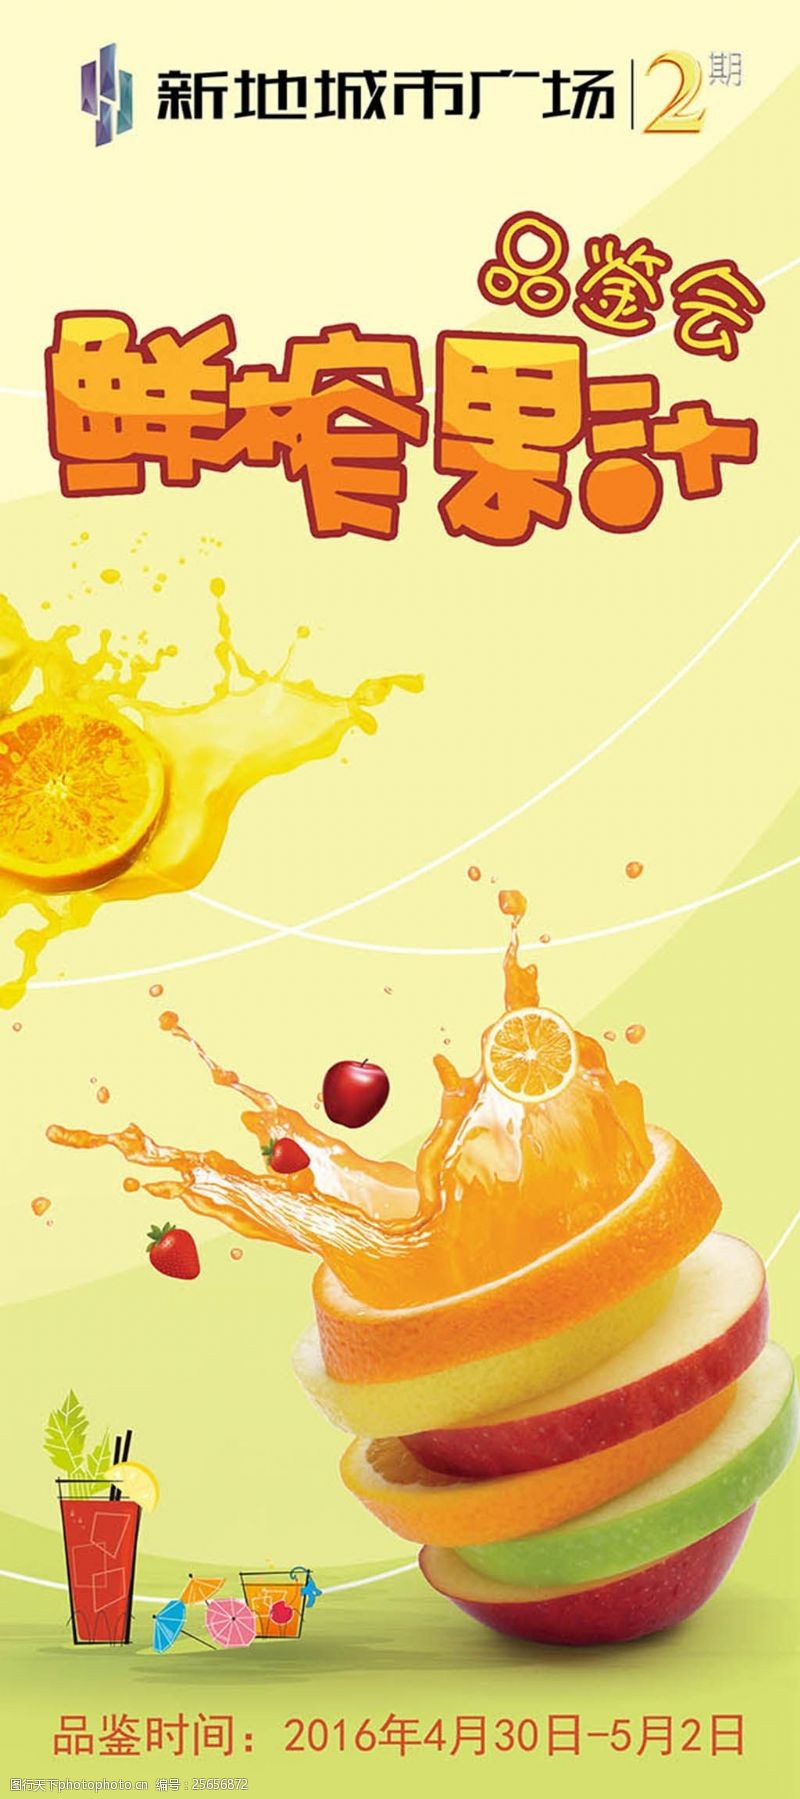 果汁饮料设计鲜榨果汁品鉴会活动宣传